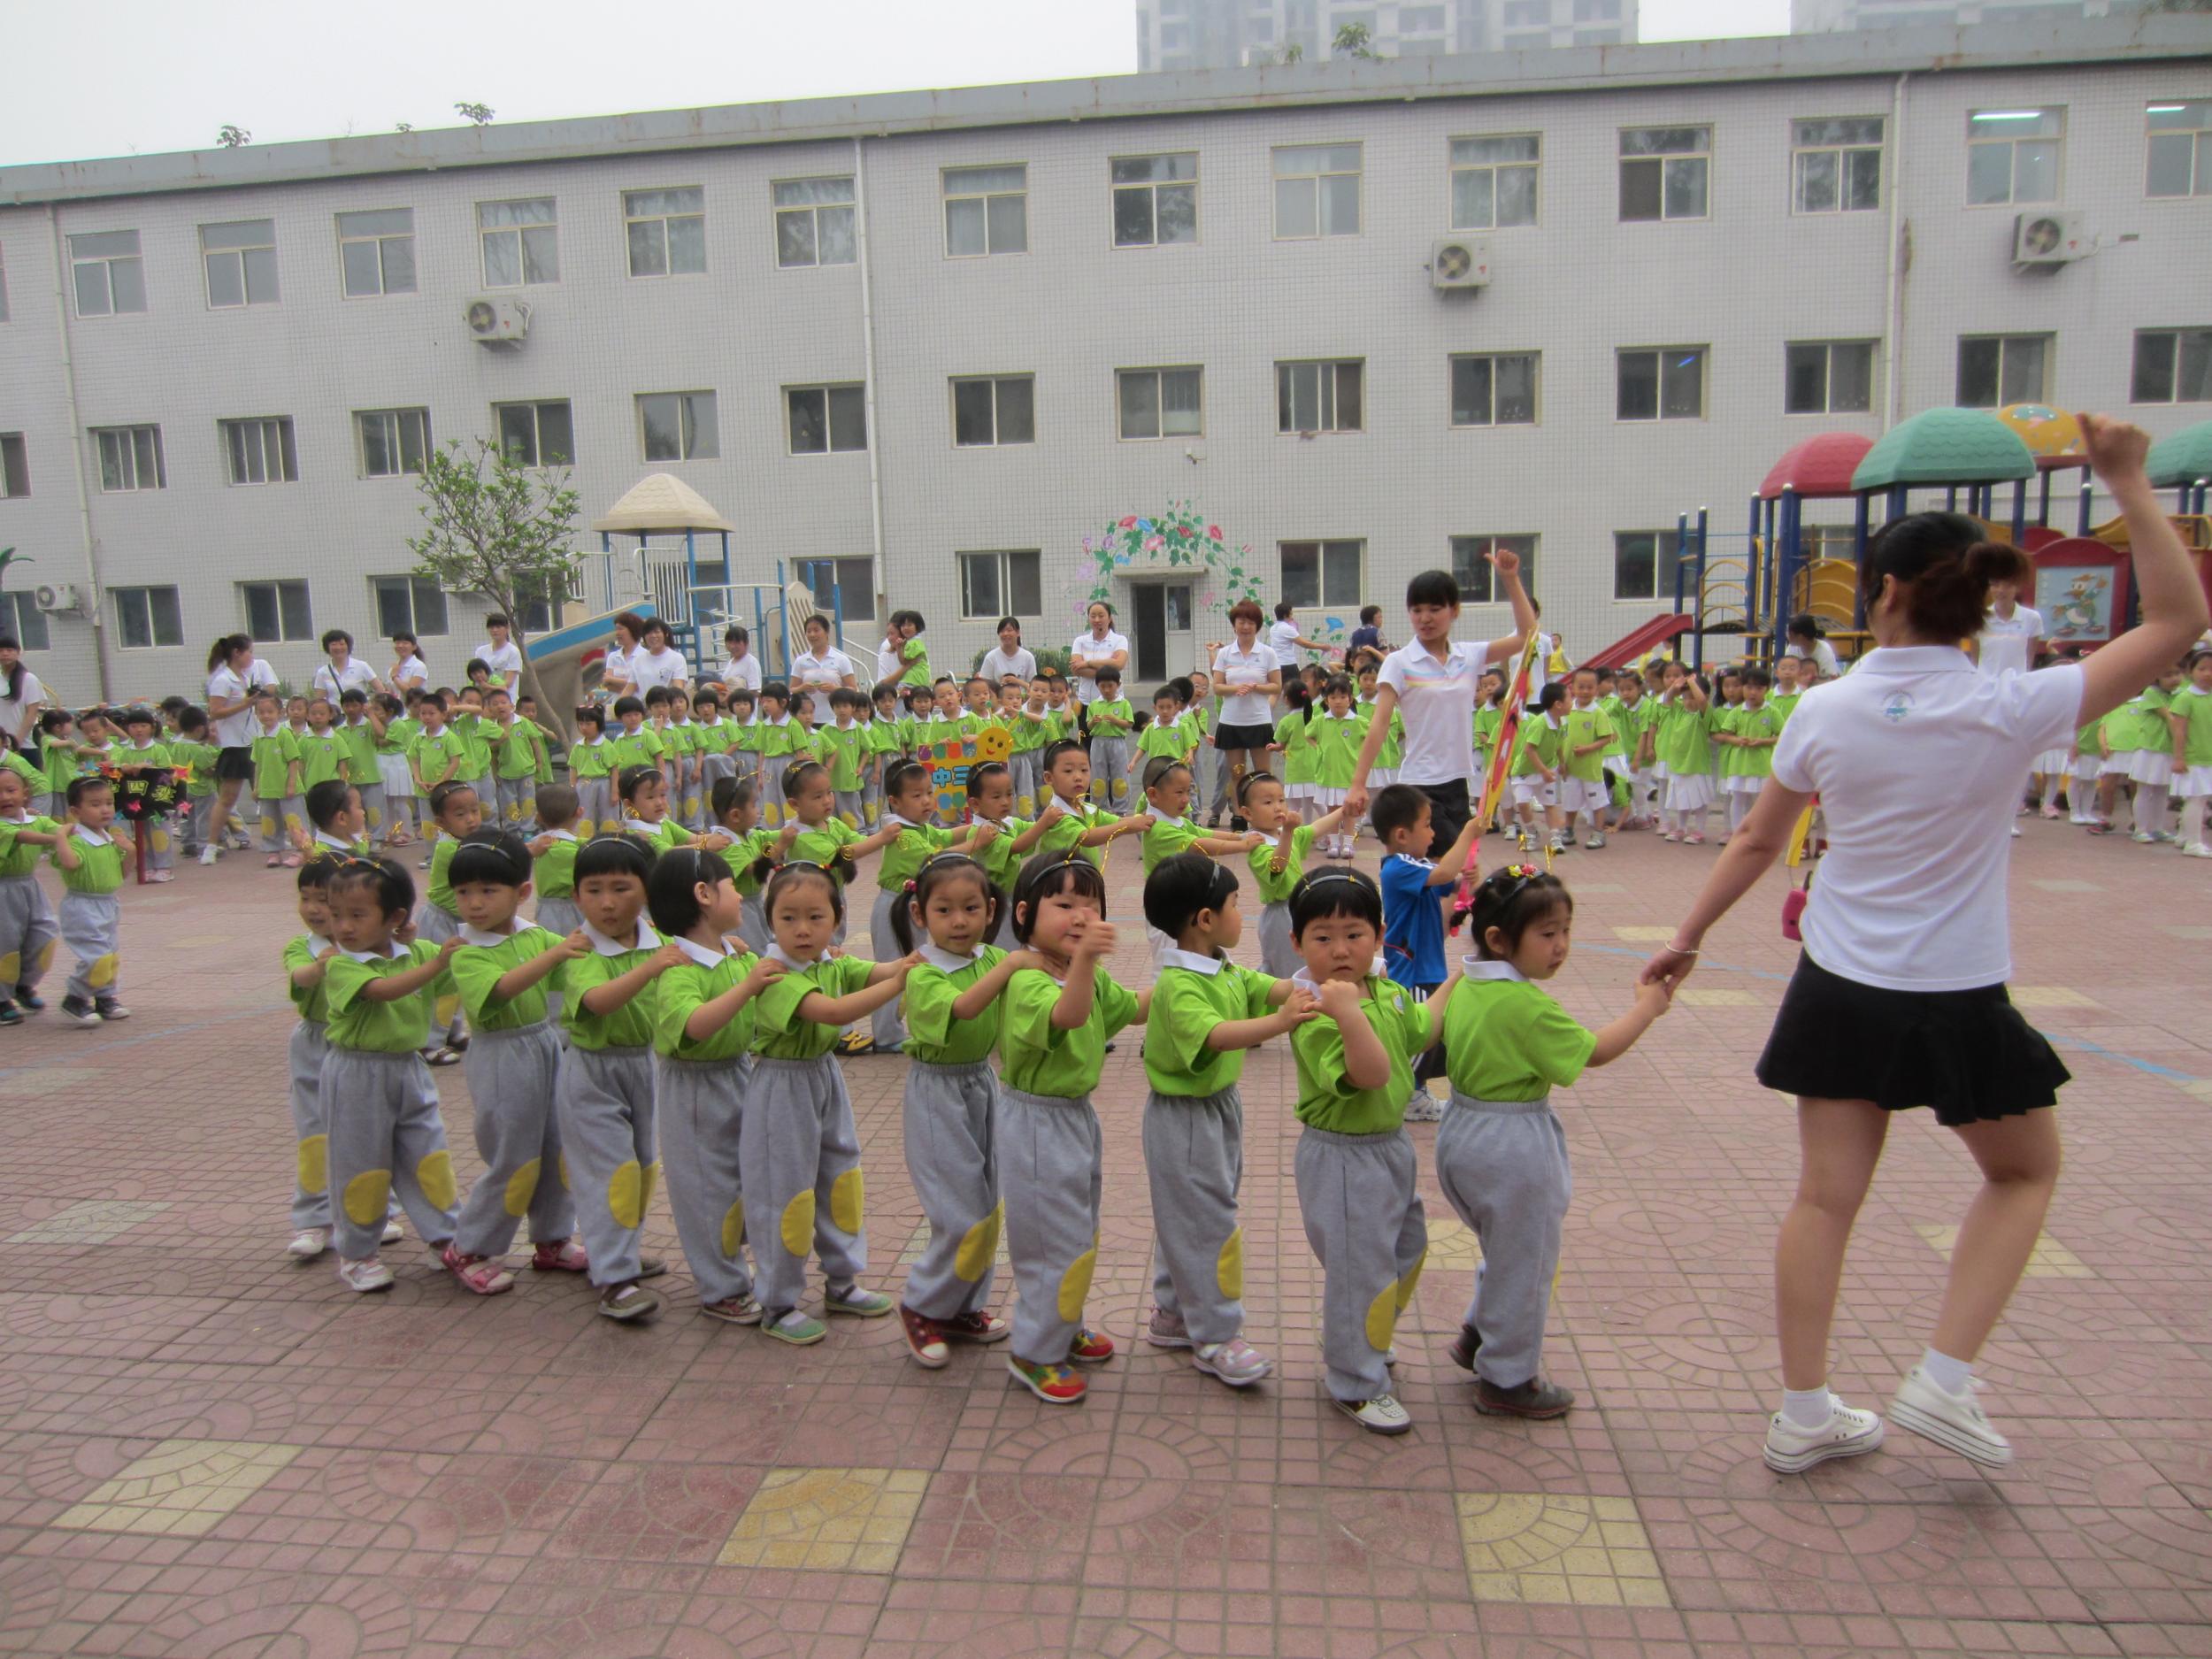 妙趣横生 石家庄一幼儿园举行趣味亲子运动会